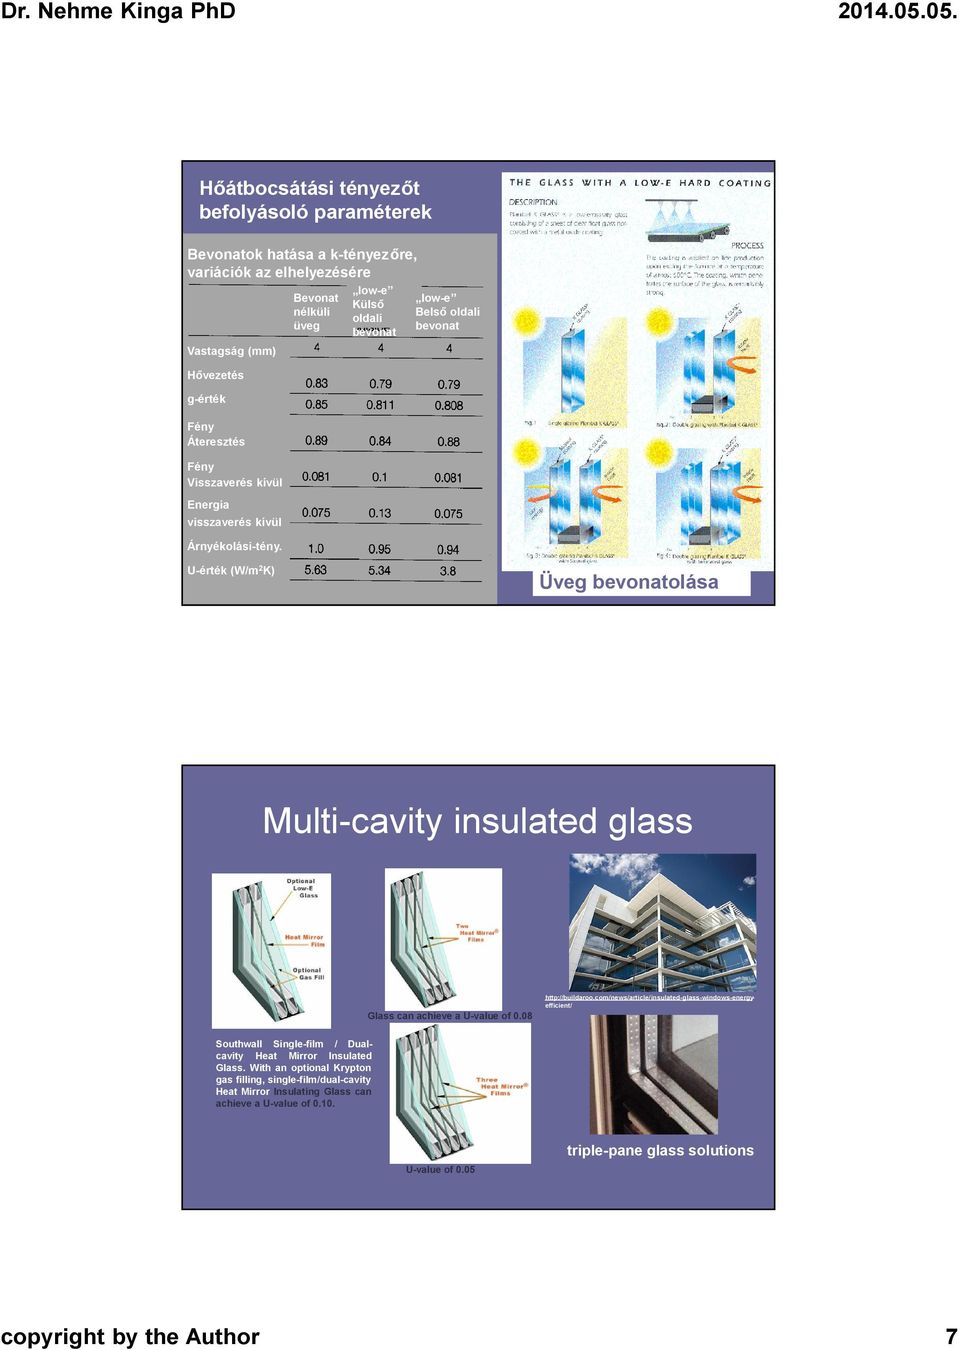 Bevonat nélküli üveg low-e Külső oldali bevonat low-e Belső oldali bevonat U-érték (W/m 2 K) Üveg bevonatolása Multi-cavity insulated glass Glass can achieve a U-value of 0.